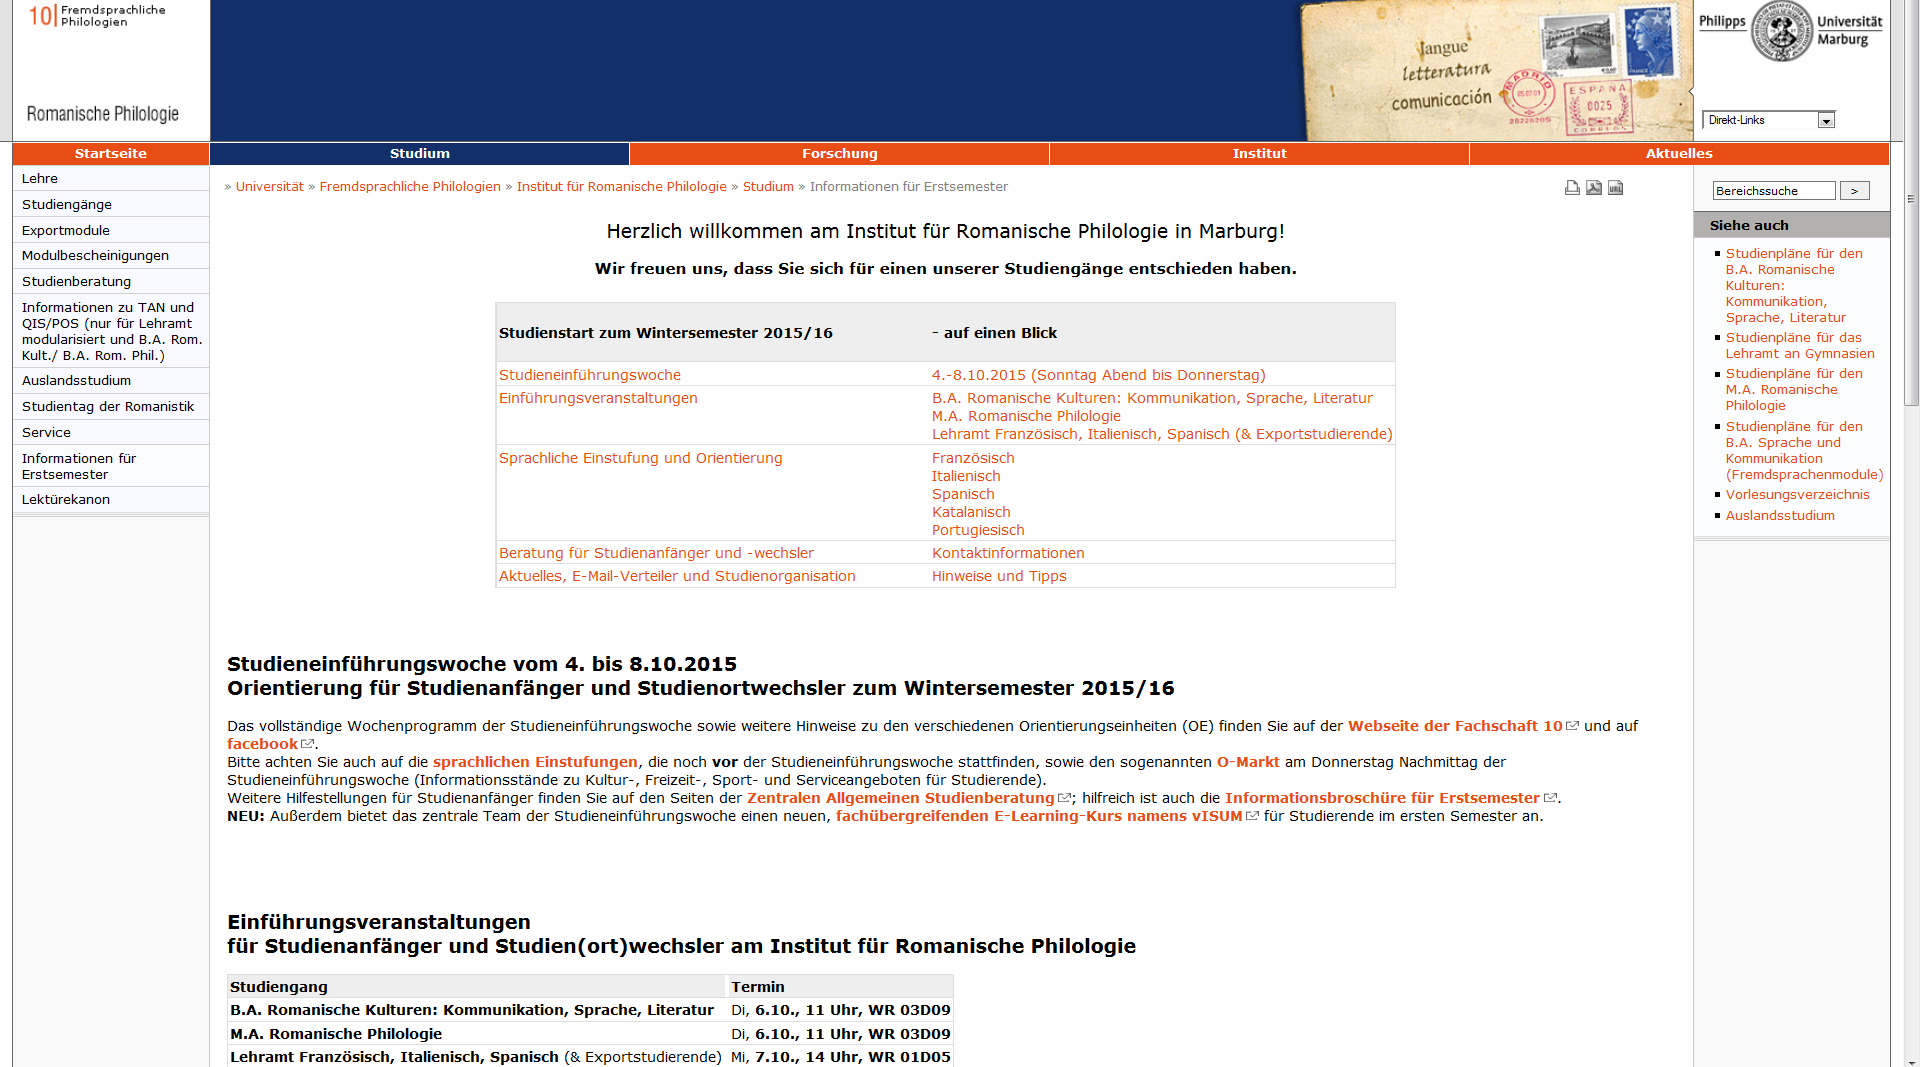 Sprachliche Einstufung im WS 15/16 www.uni-marburg.